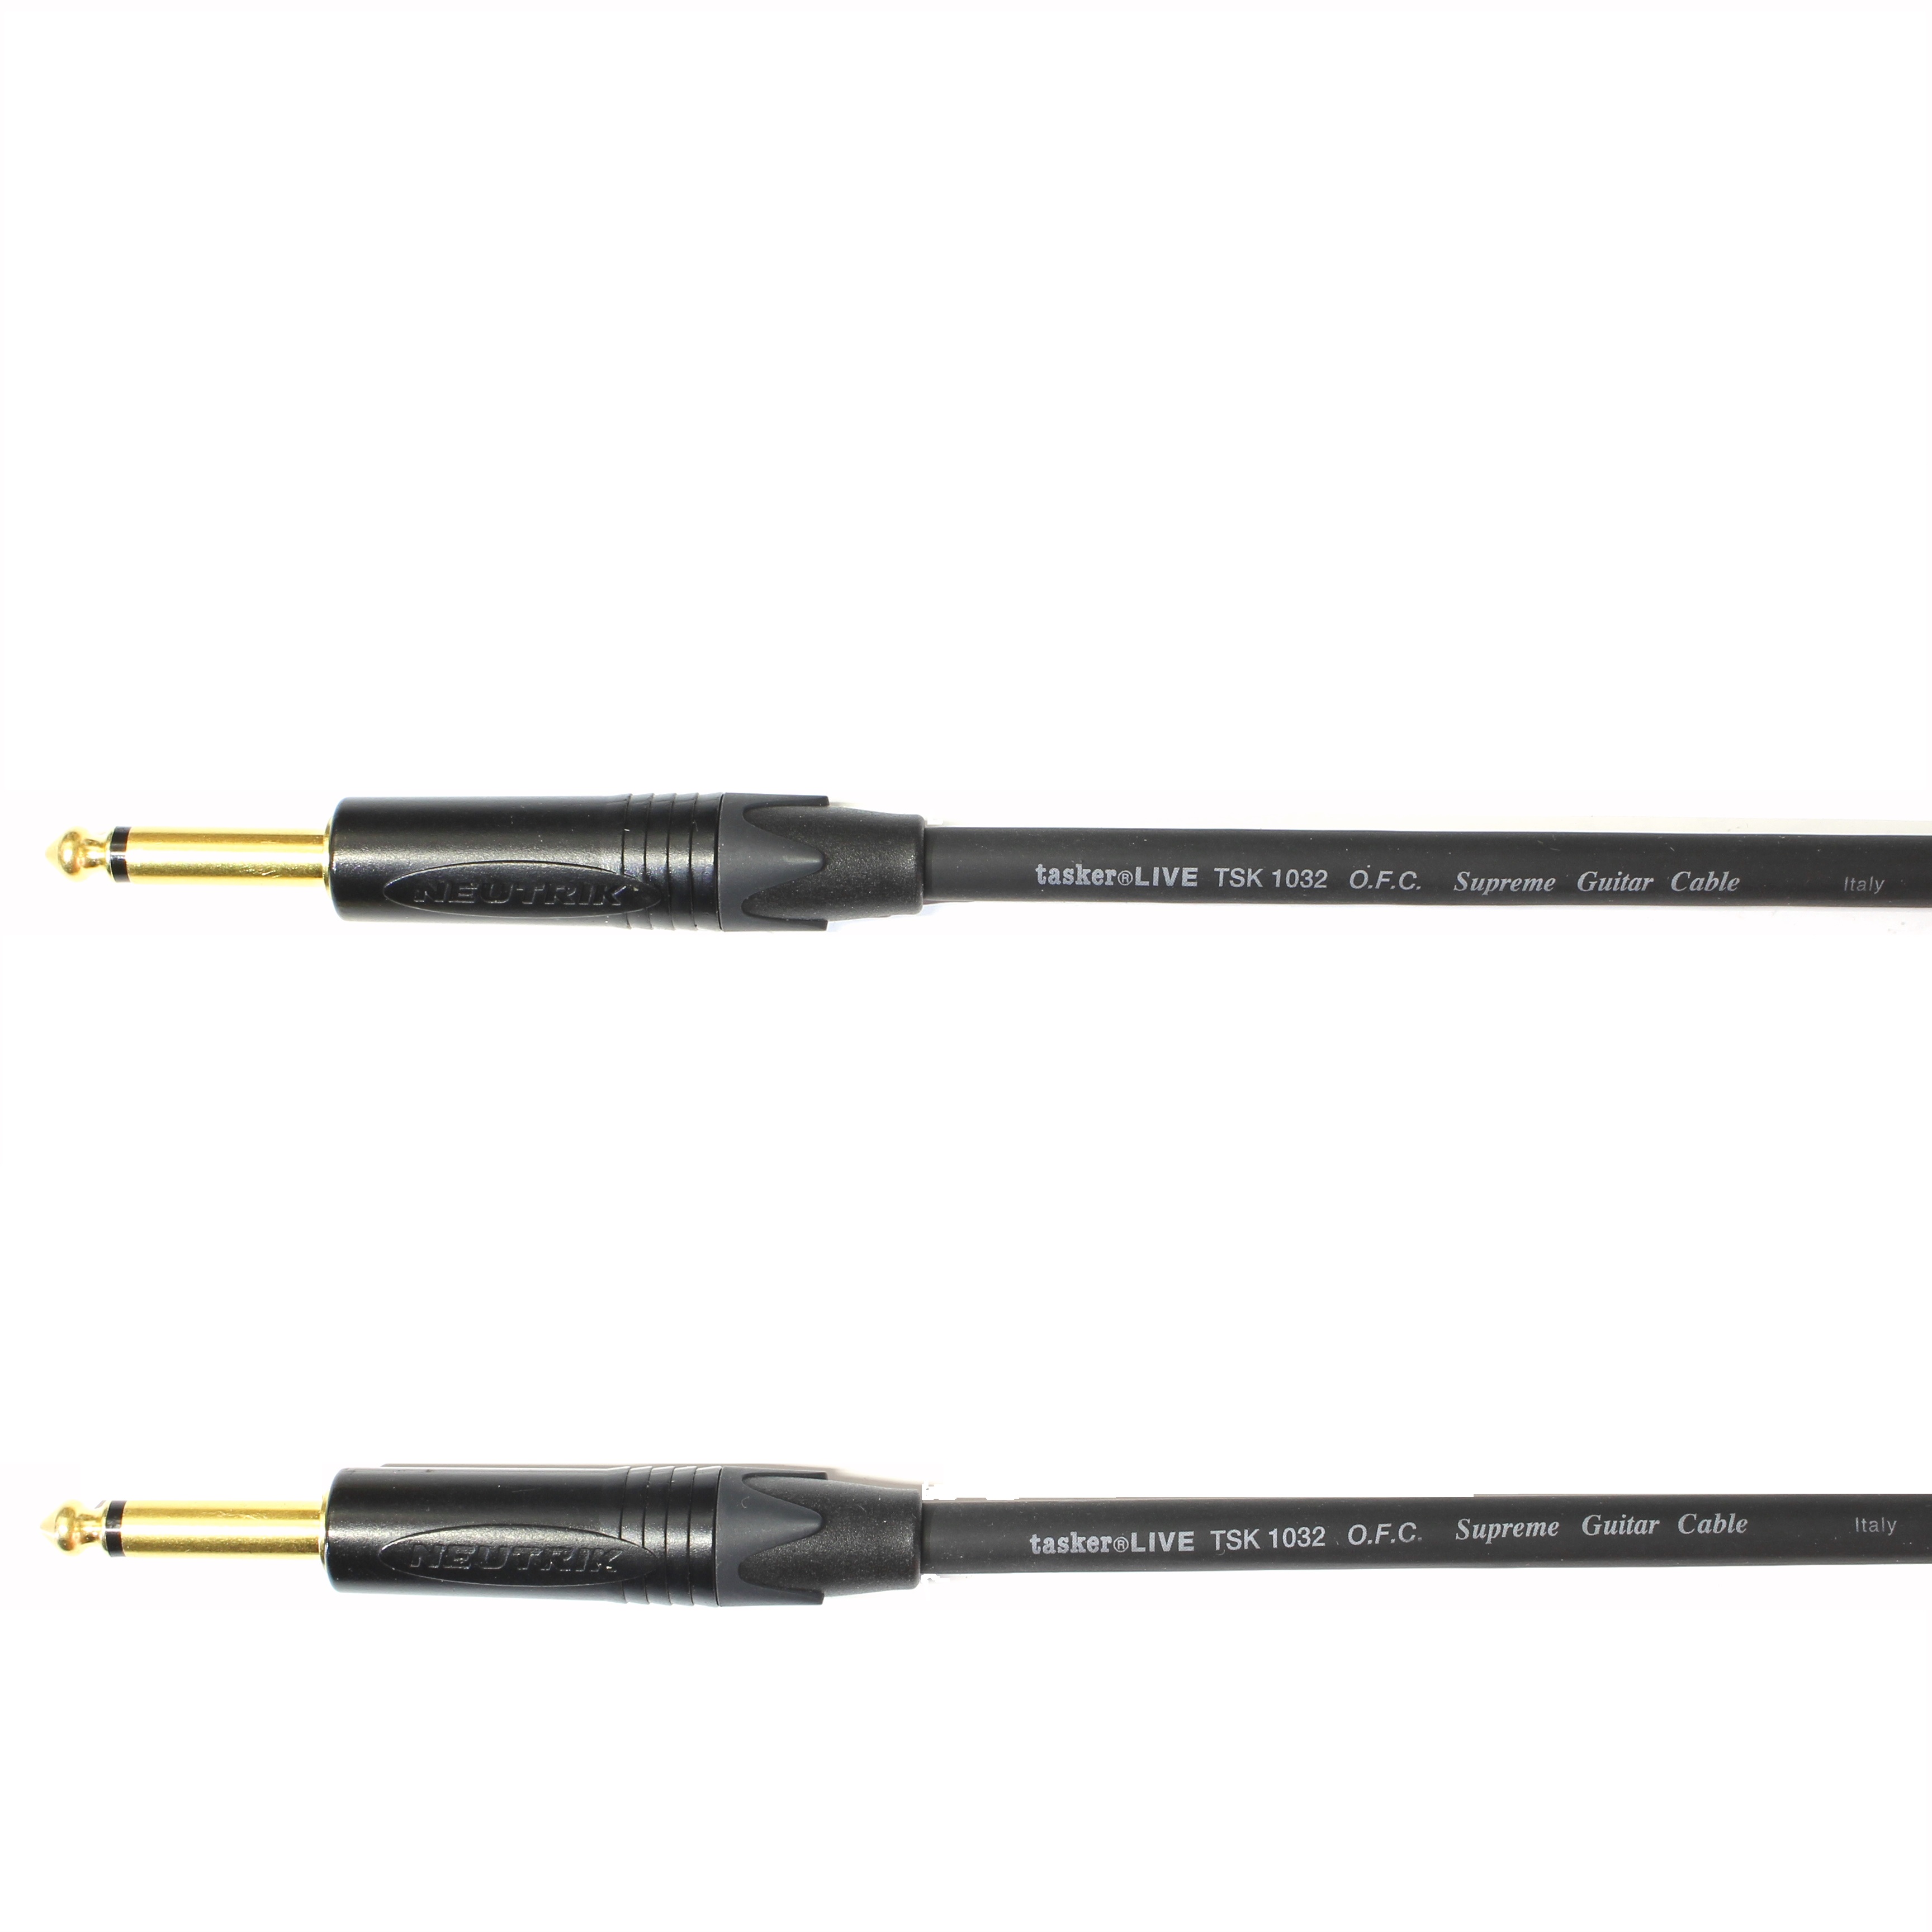 Kytarový kabel Jack 6,3 mono přímý/ Jack 6,3 mono přímý, 30 cm, TSK1032